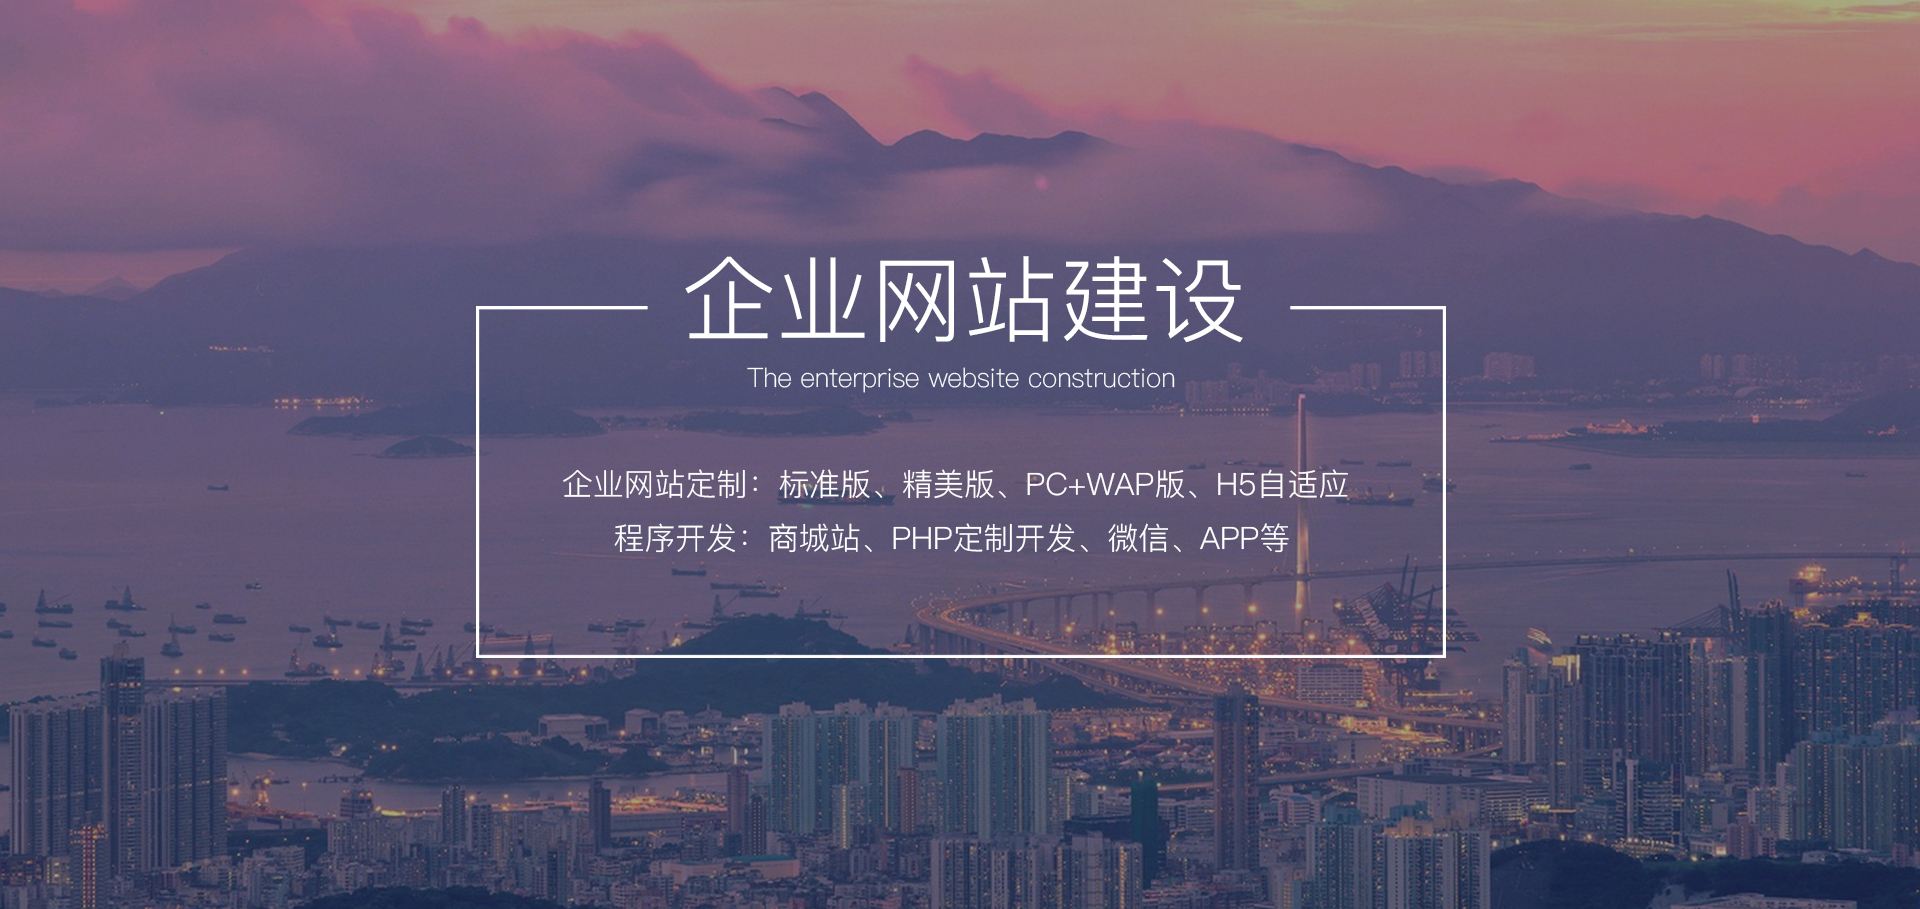 台江企业网站建设的常见大误区有哪些？